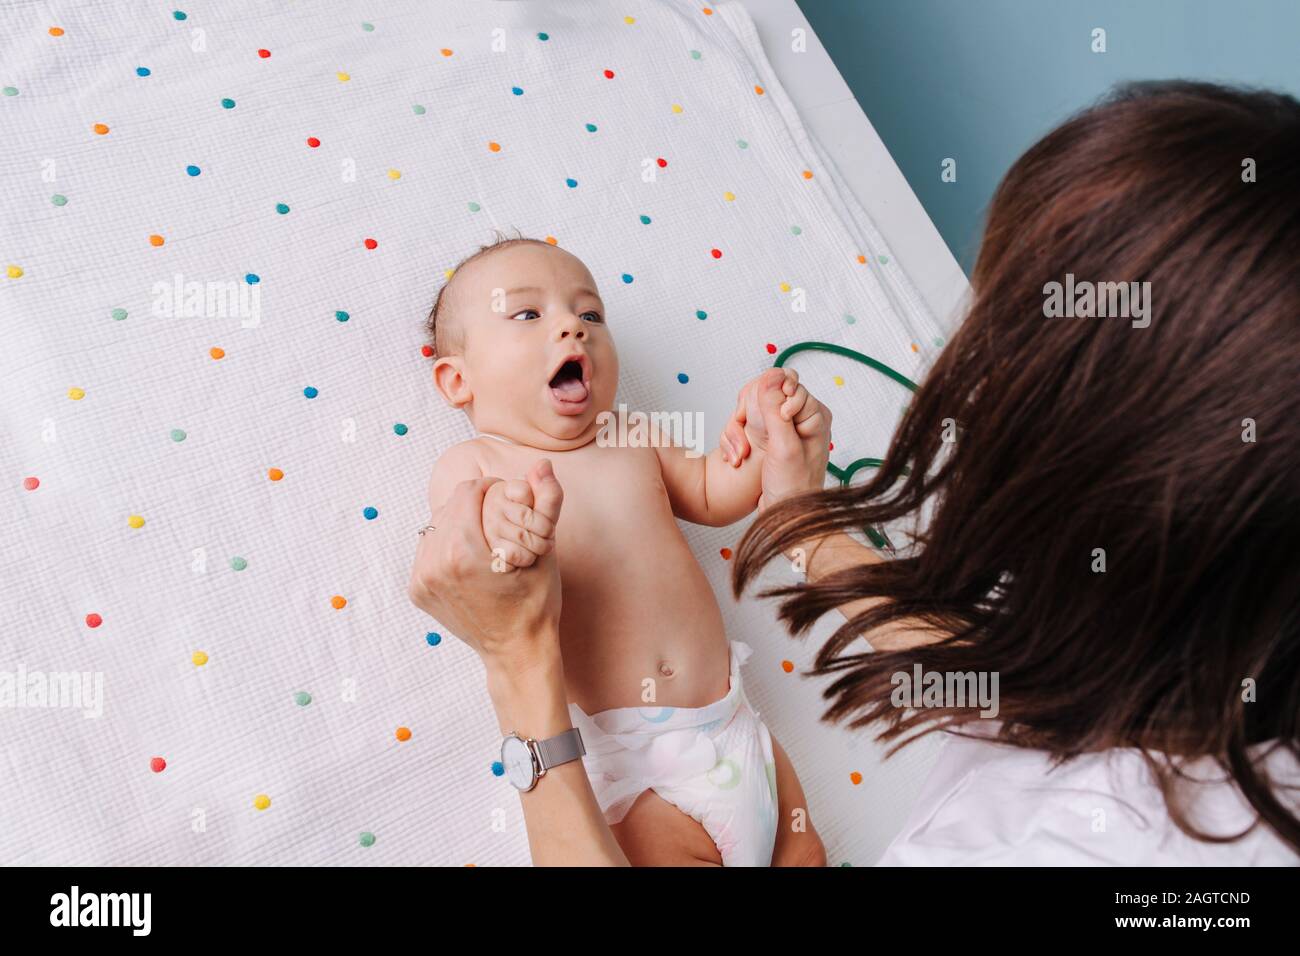 Medico pediatra controlla il bambino di riflessi di presa Foto Stock